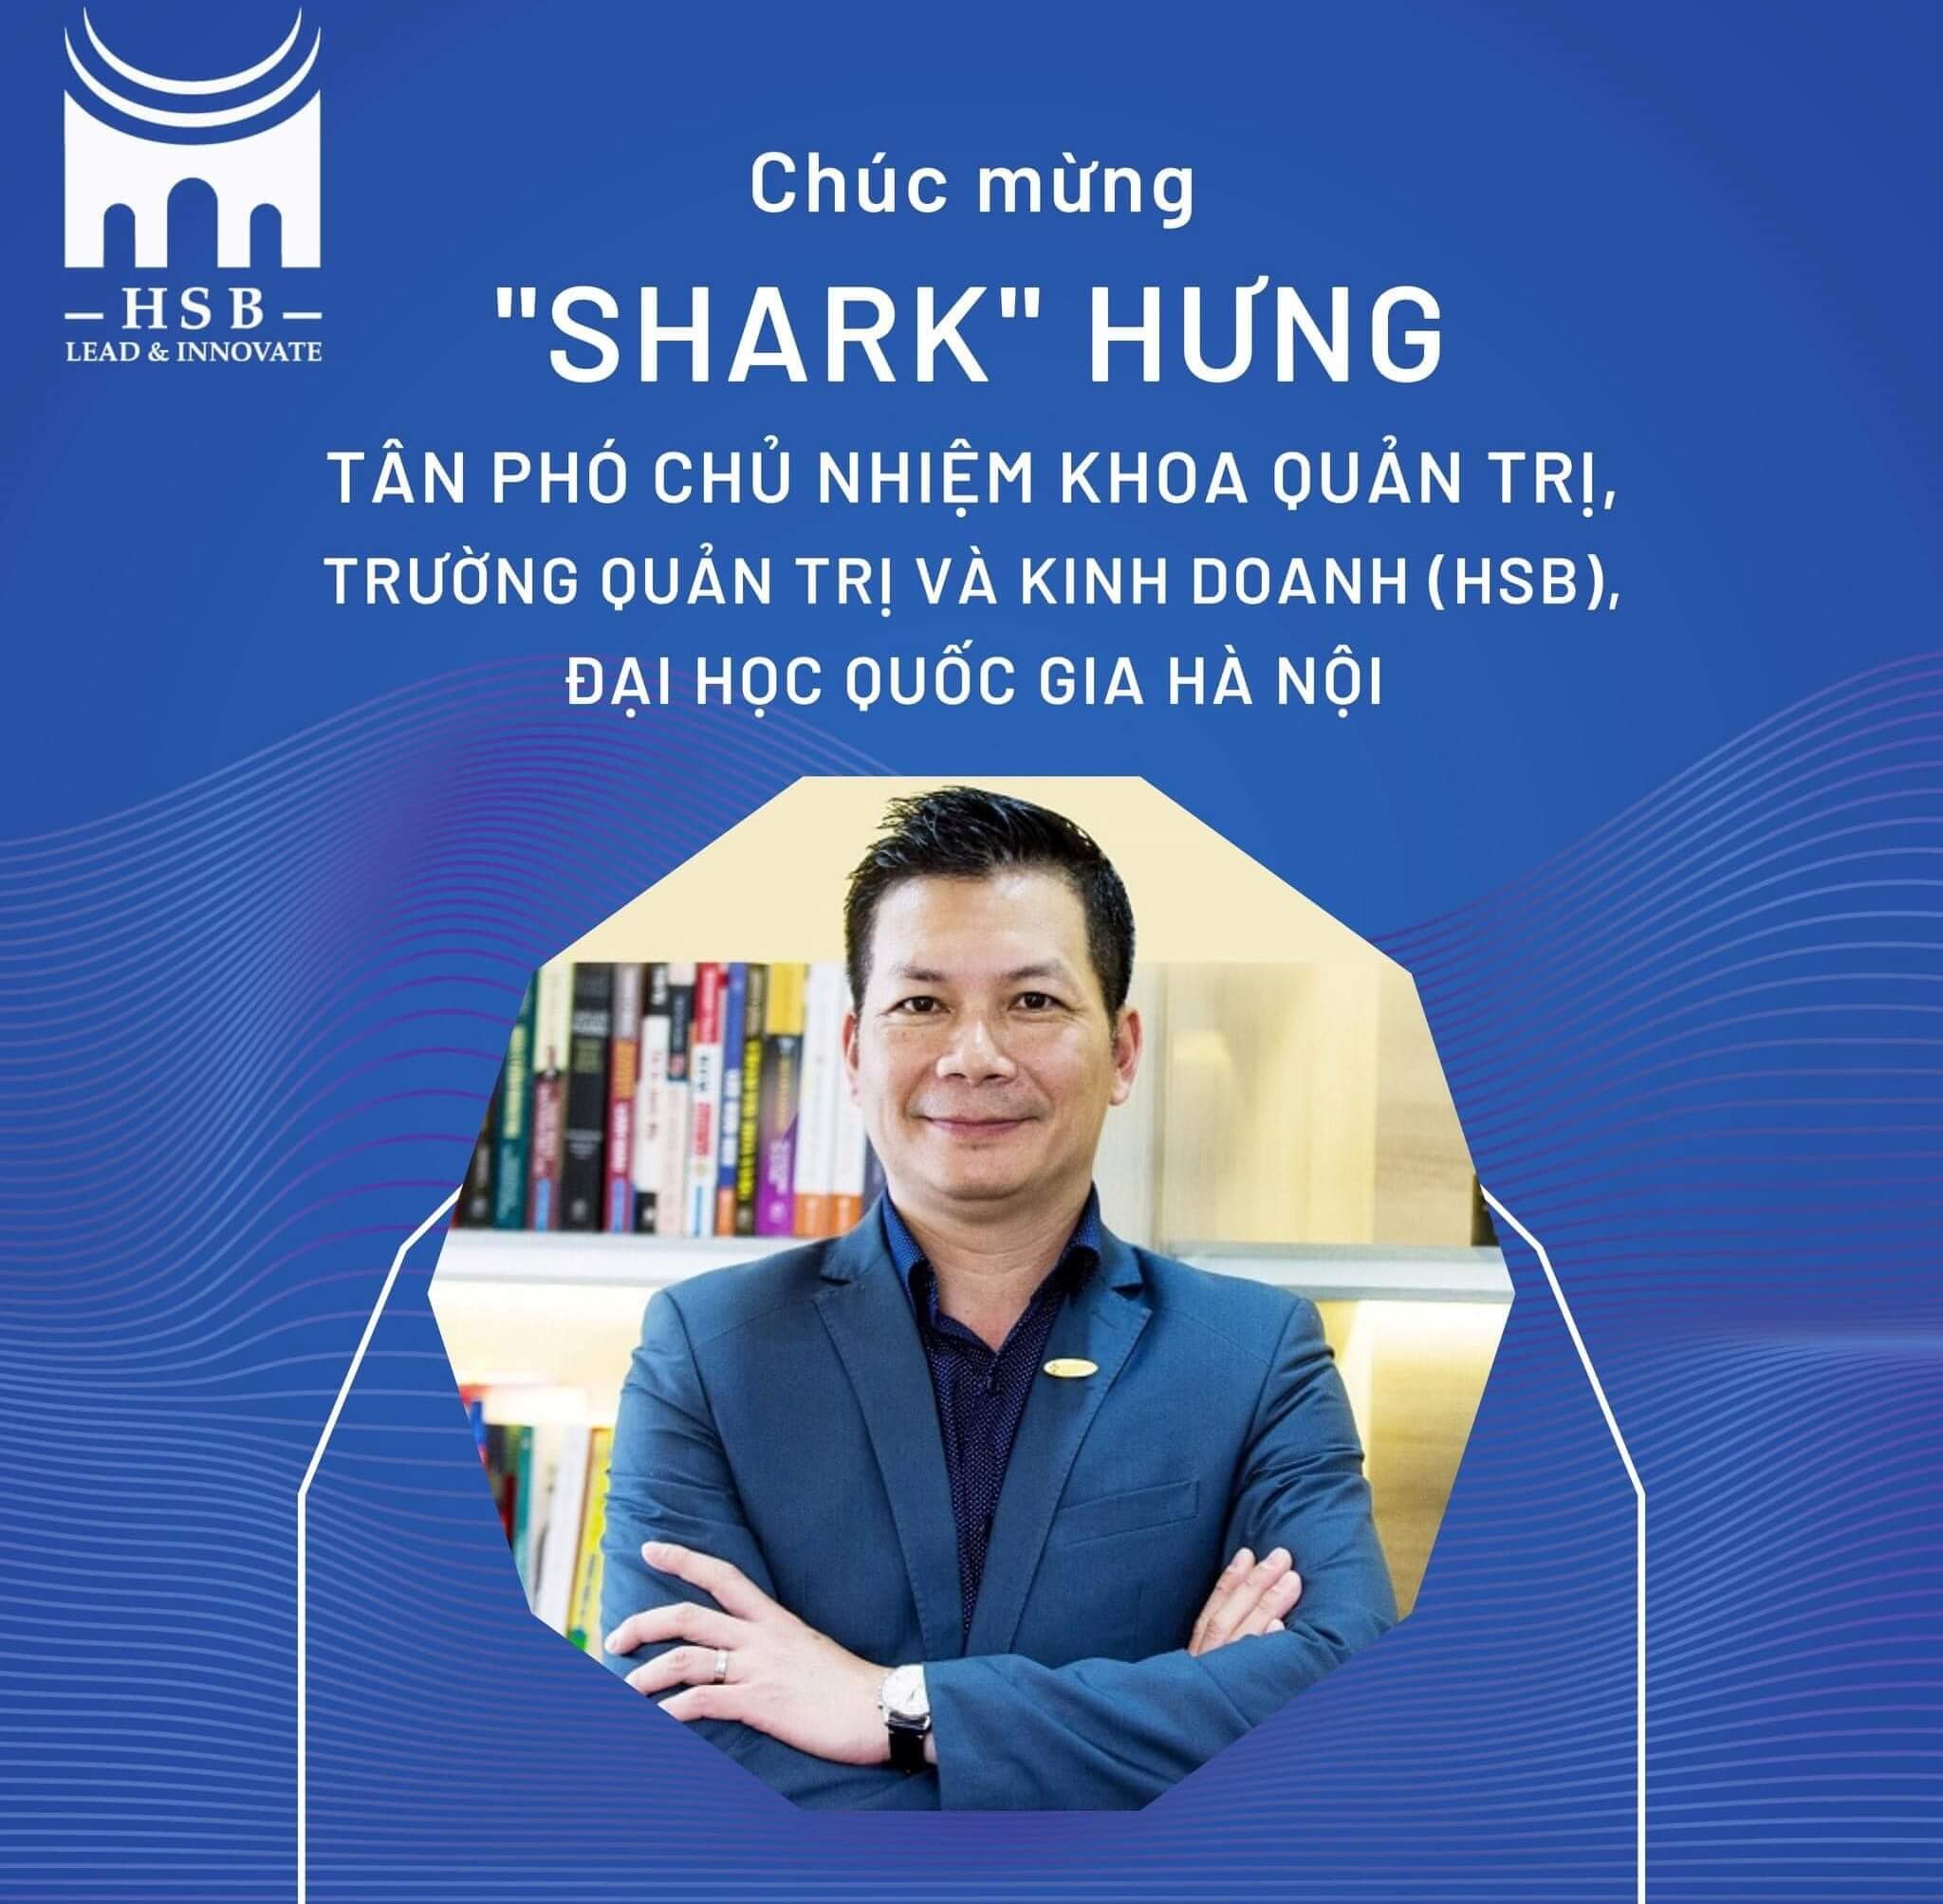 Shark Hưng đảm nhiệm vị trí phó chủ nhiệm khoa quản trị, trường quản trị và kinh doanh HSB